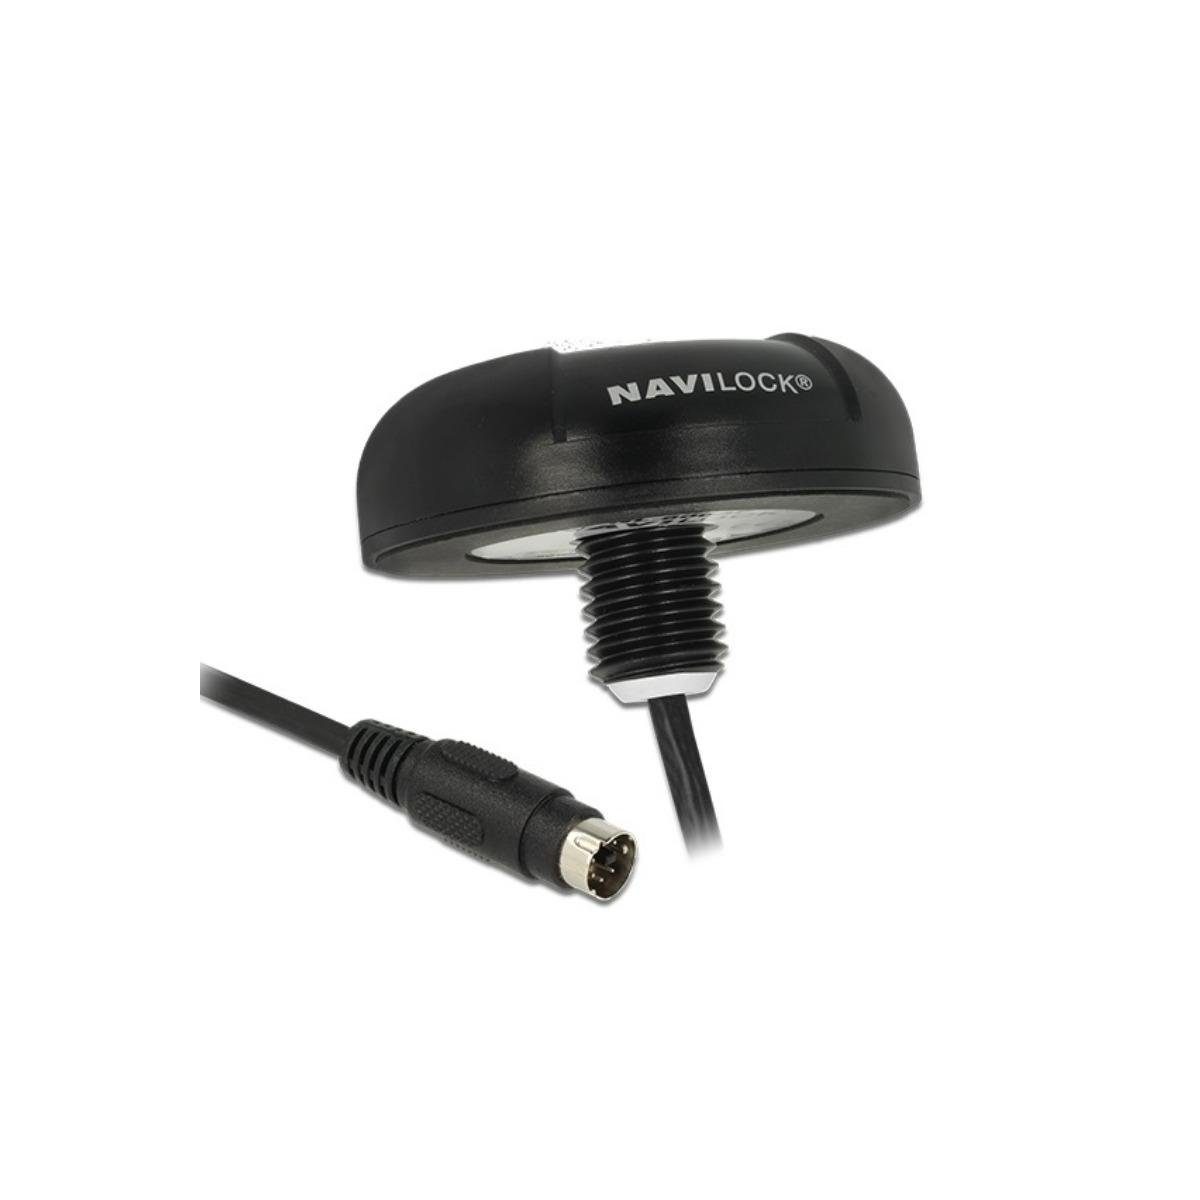 Navilock seriell -... WLAN-Antenne - - Empfänger Multi 62528 NL-8044P MD6 GNSS